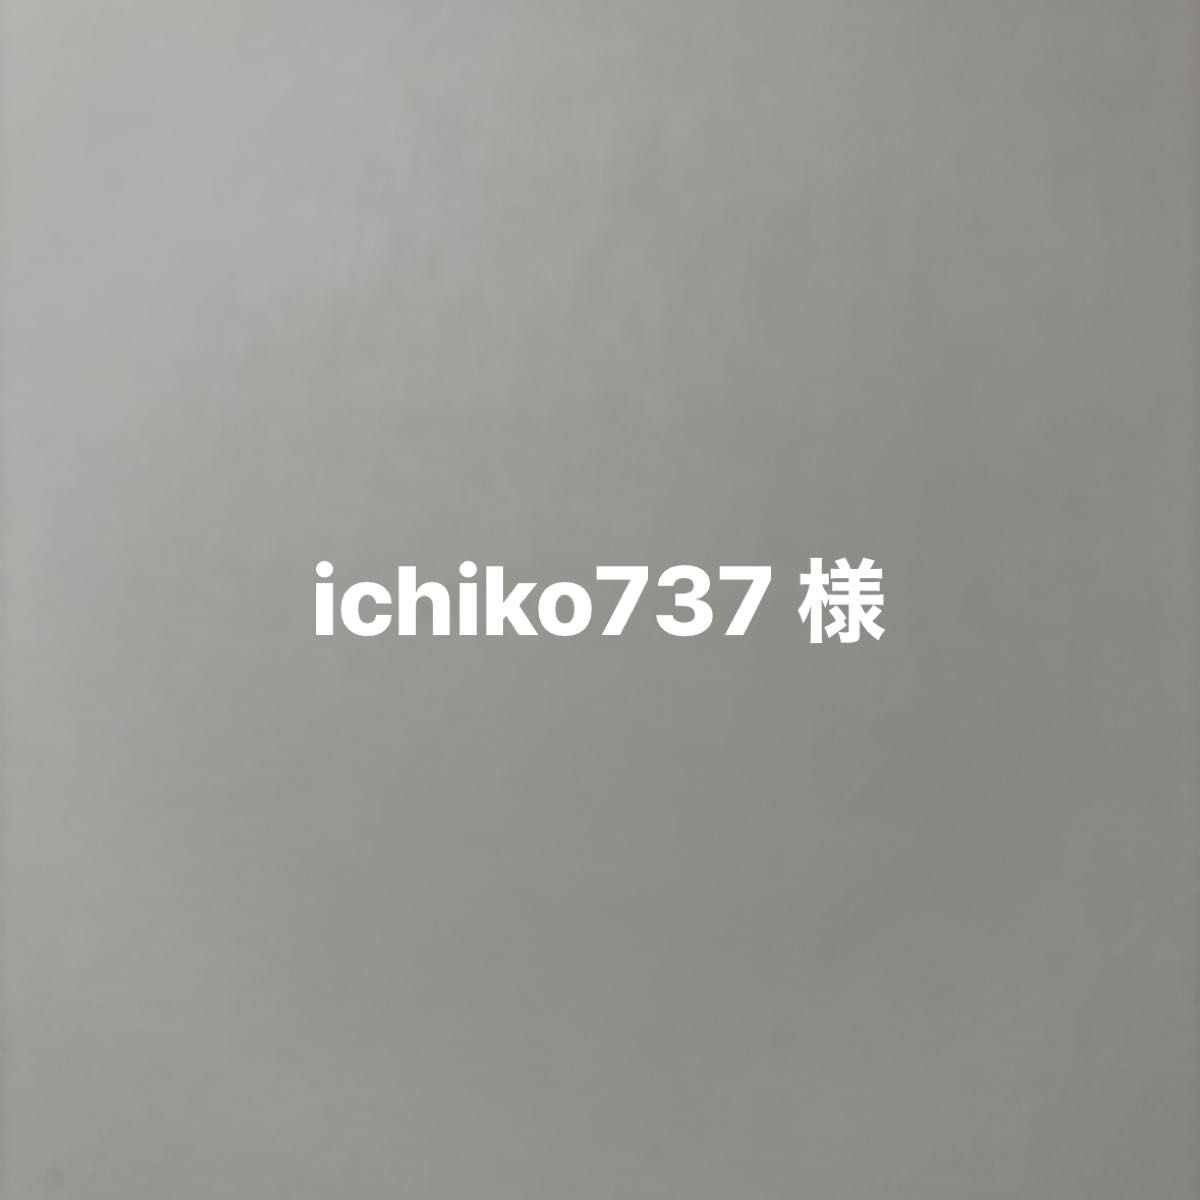 ichiko737 様